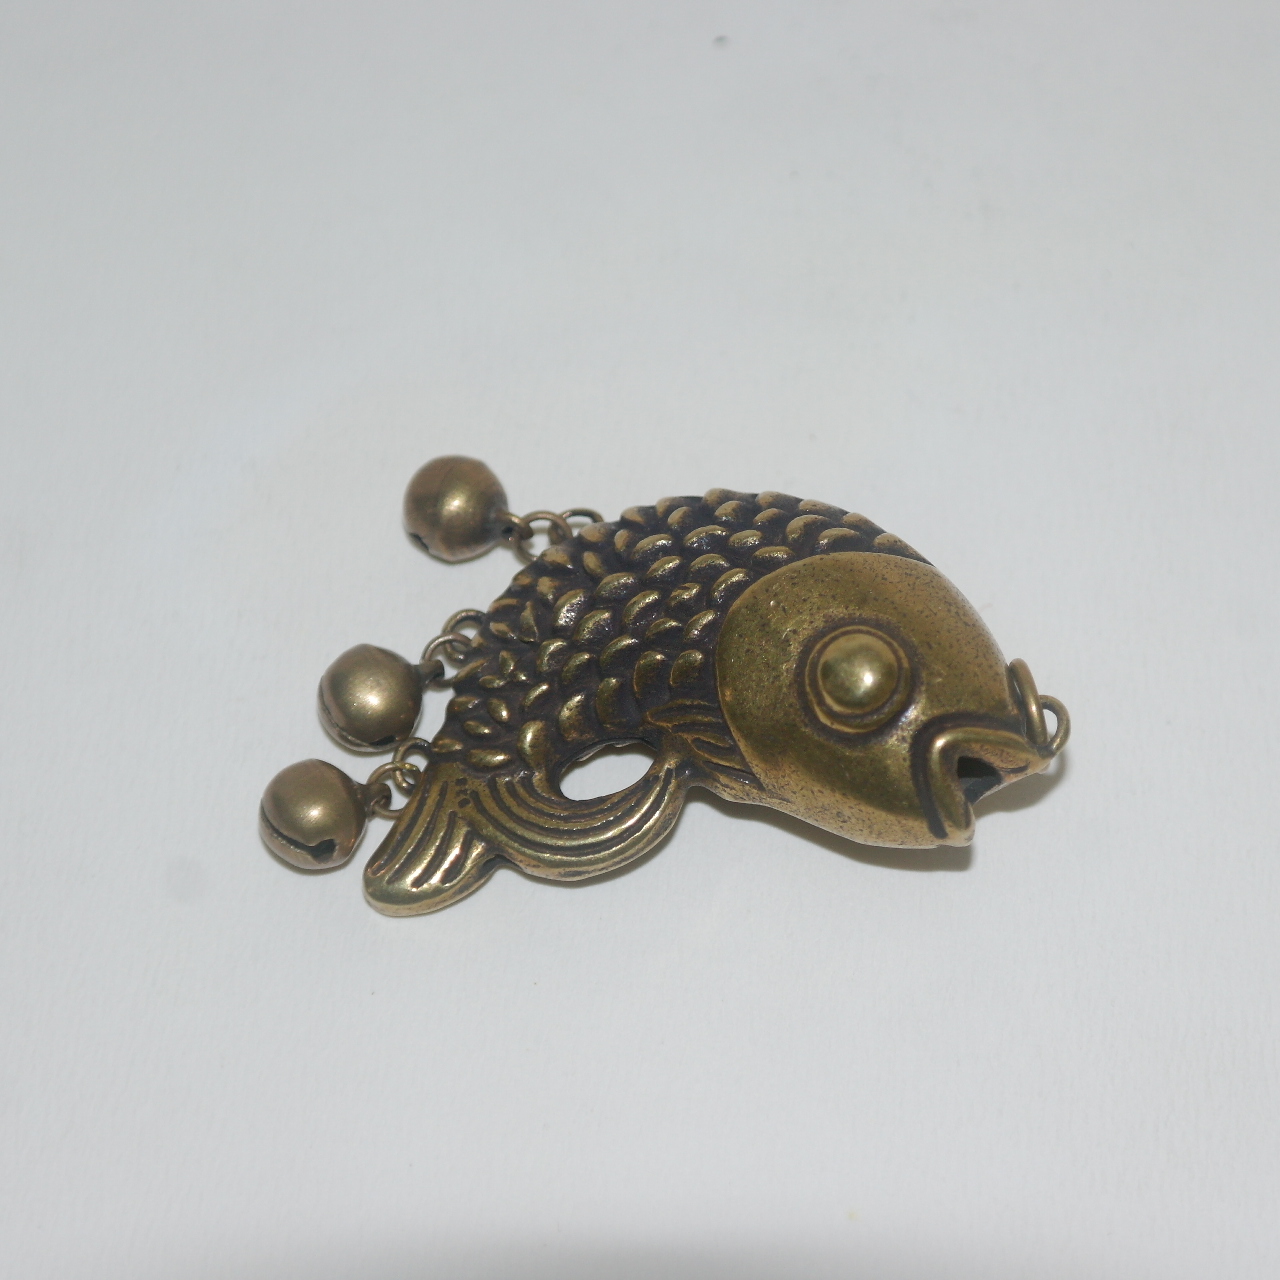 티벳 청동으로된 물고기 조각품